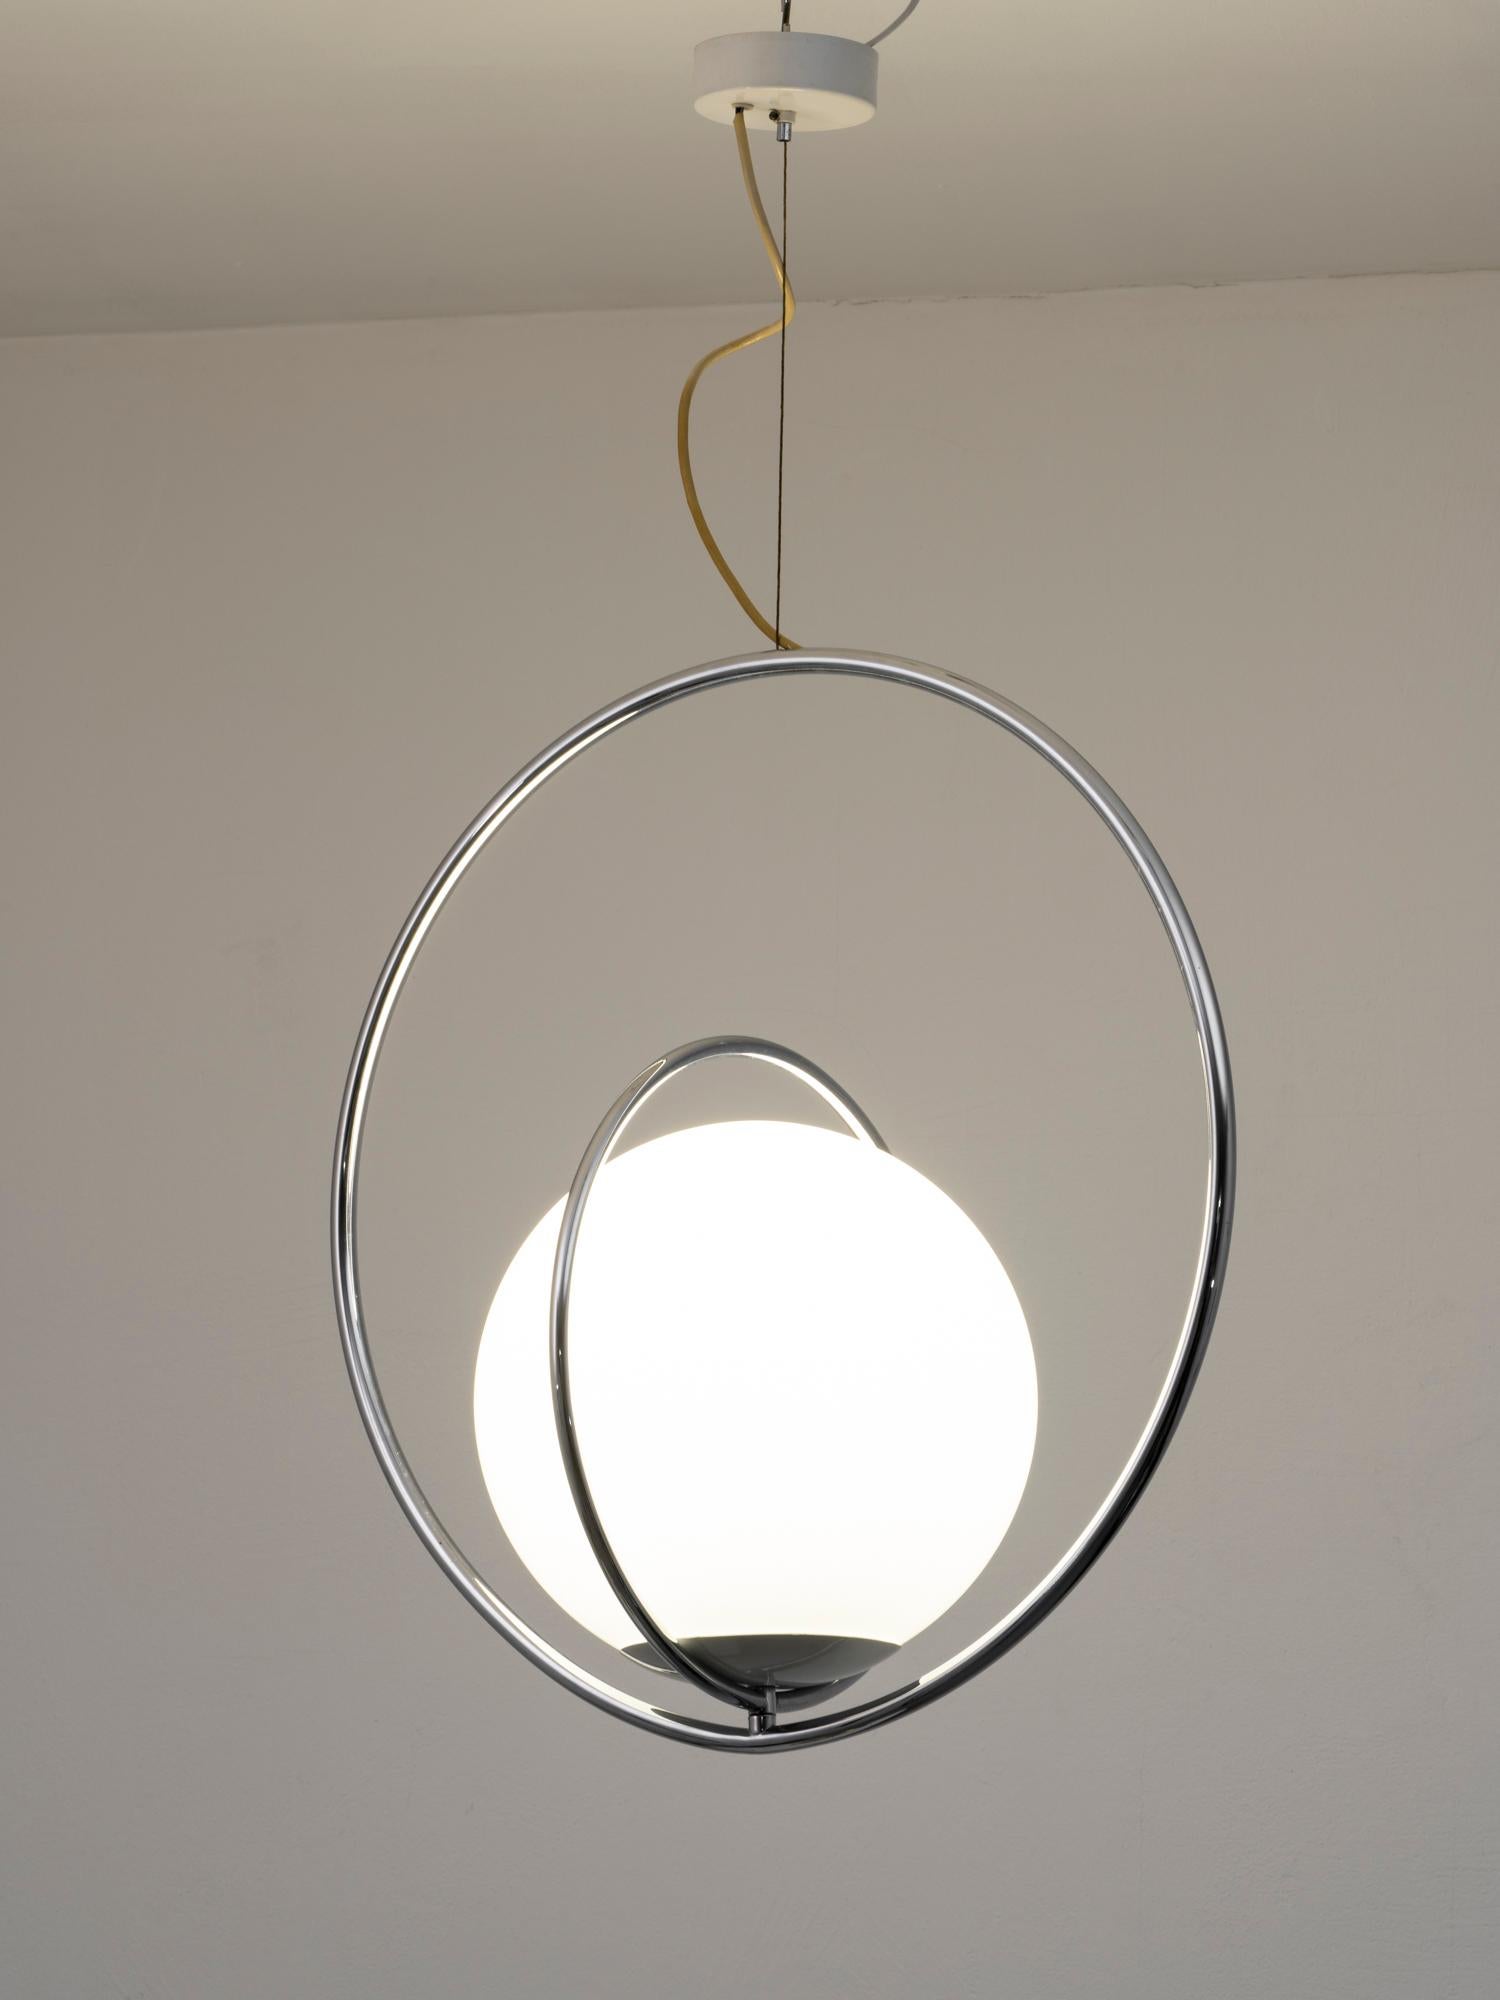 Magnifique lampe suspendue de la designer italienne Pia Guidetti Crippa pour Lumi, datant du début des années 1970. Cette lampe est composée de deux anneaux tournants en métal chromé, qui peuvent créer différentes formes, et d'un verre opale. Il est